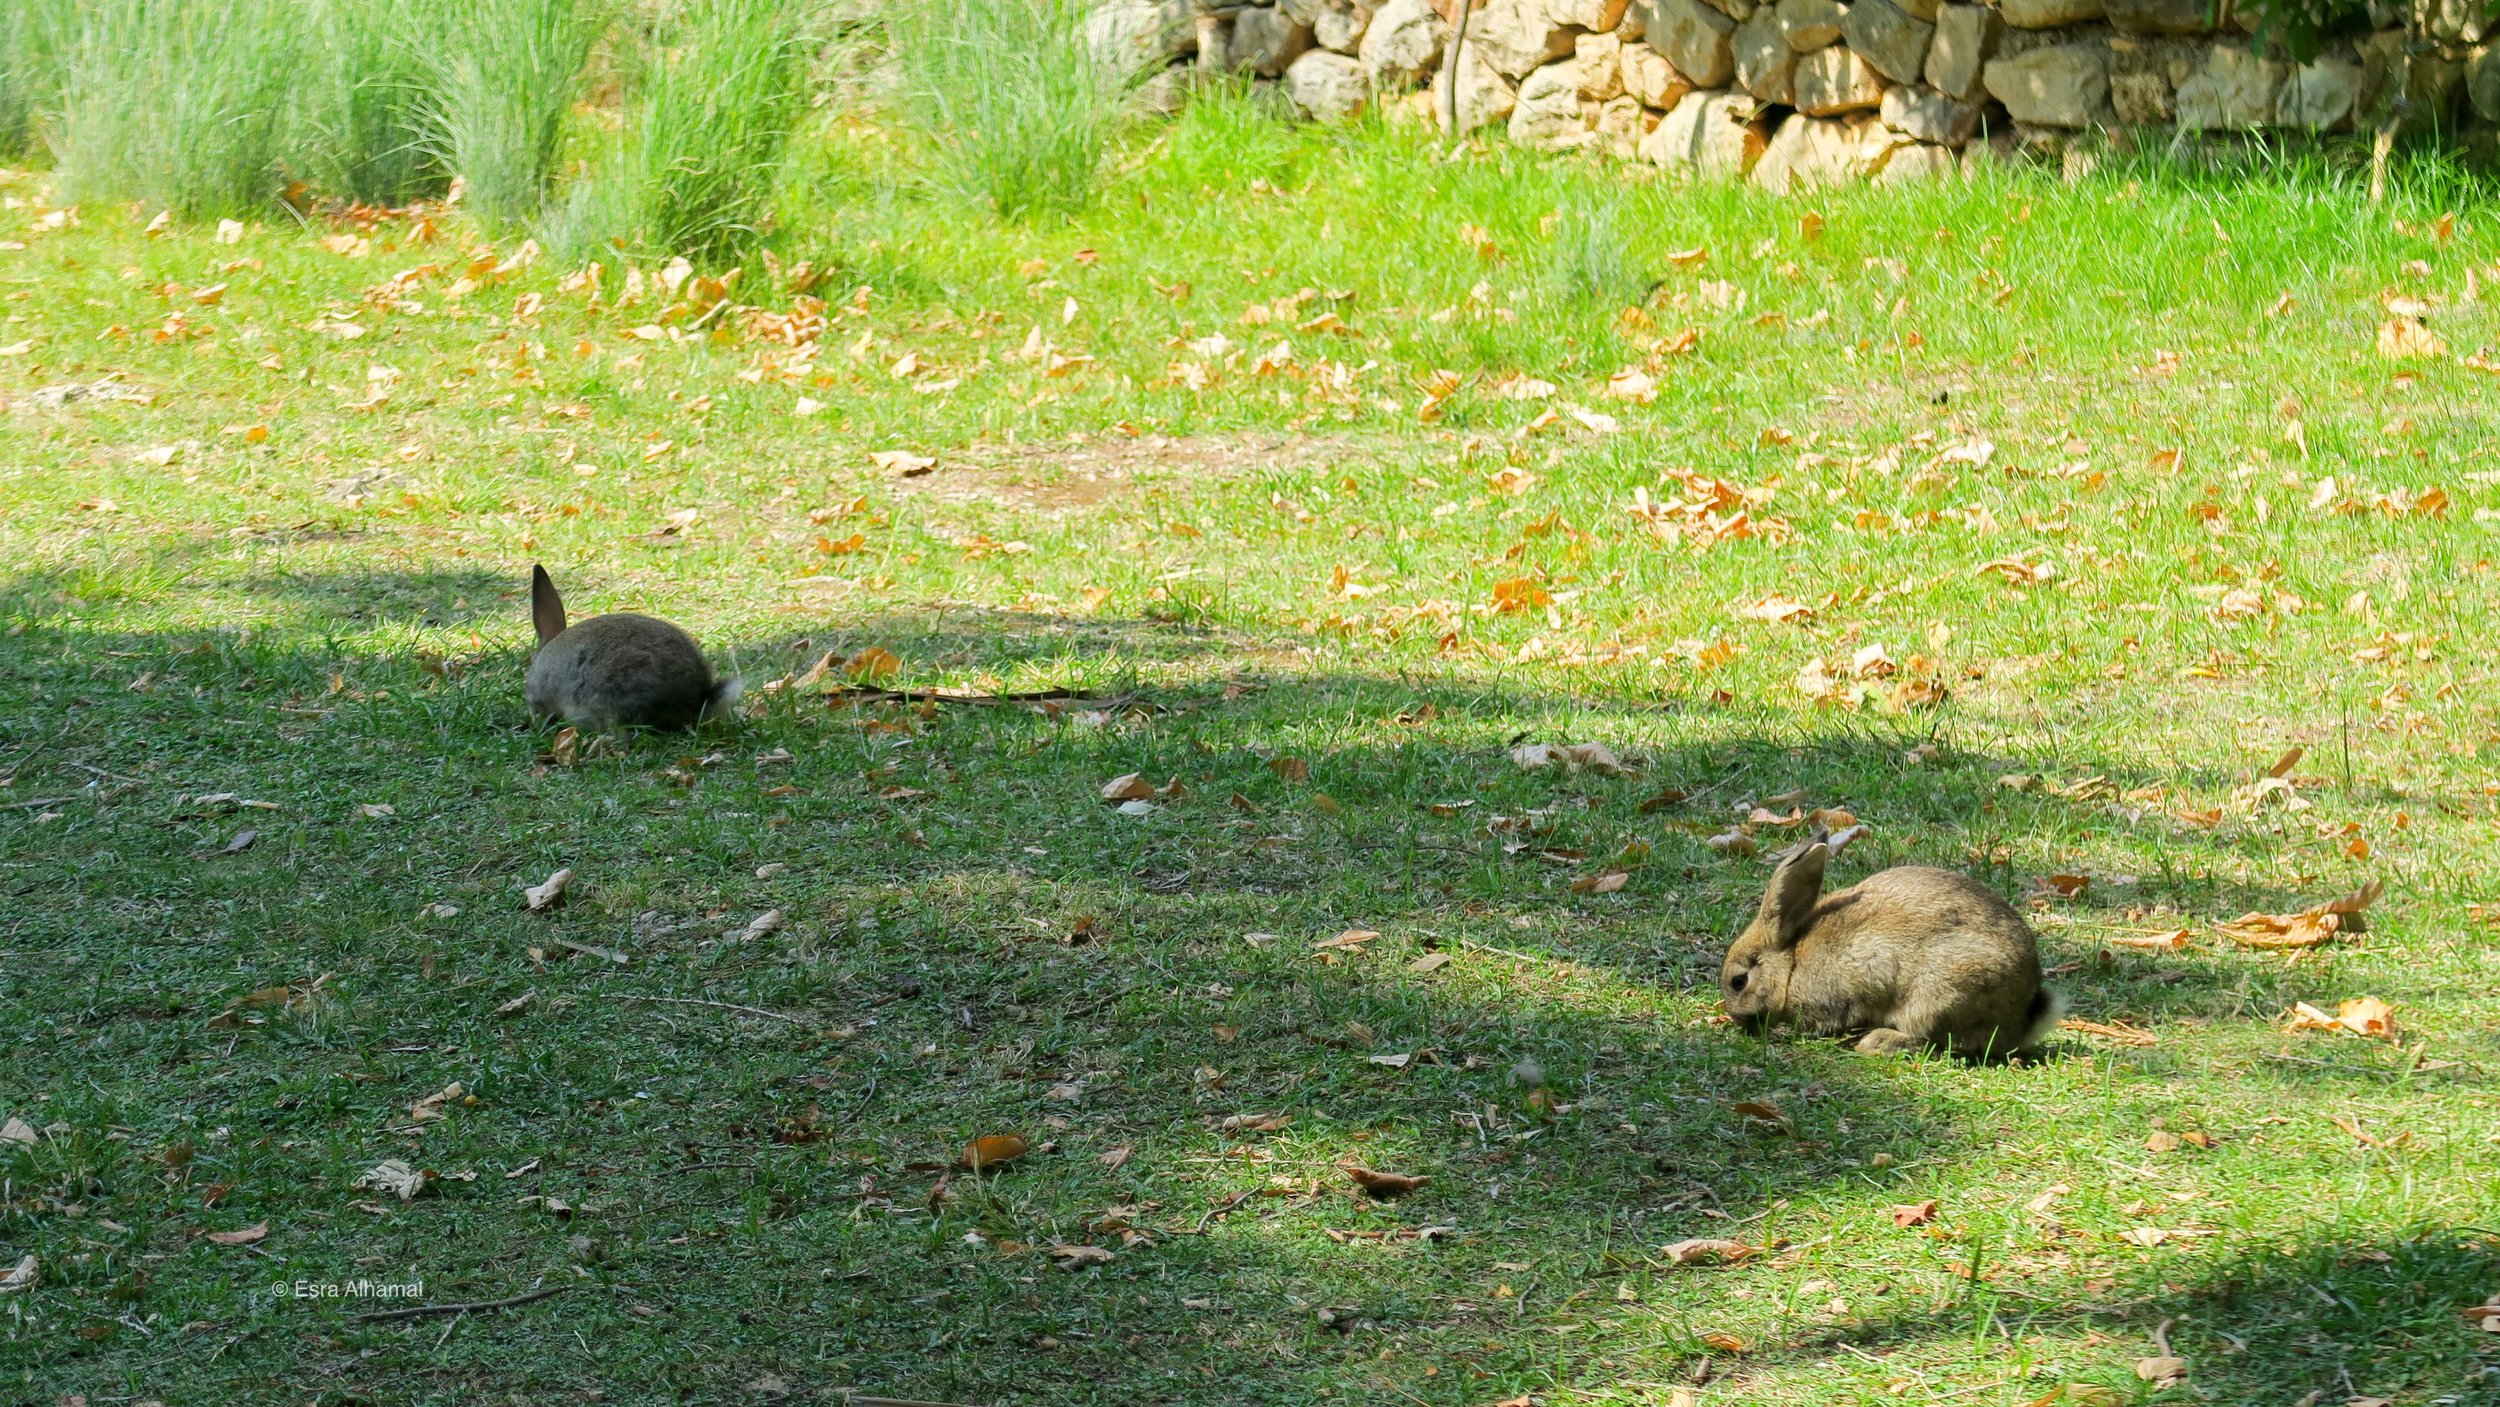 Wild Rabbits hopping around 